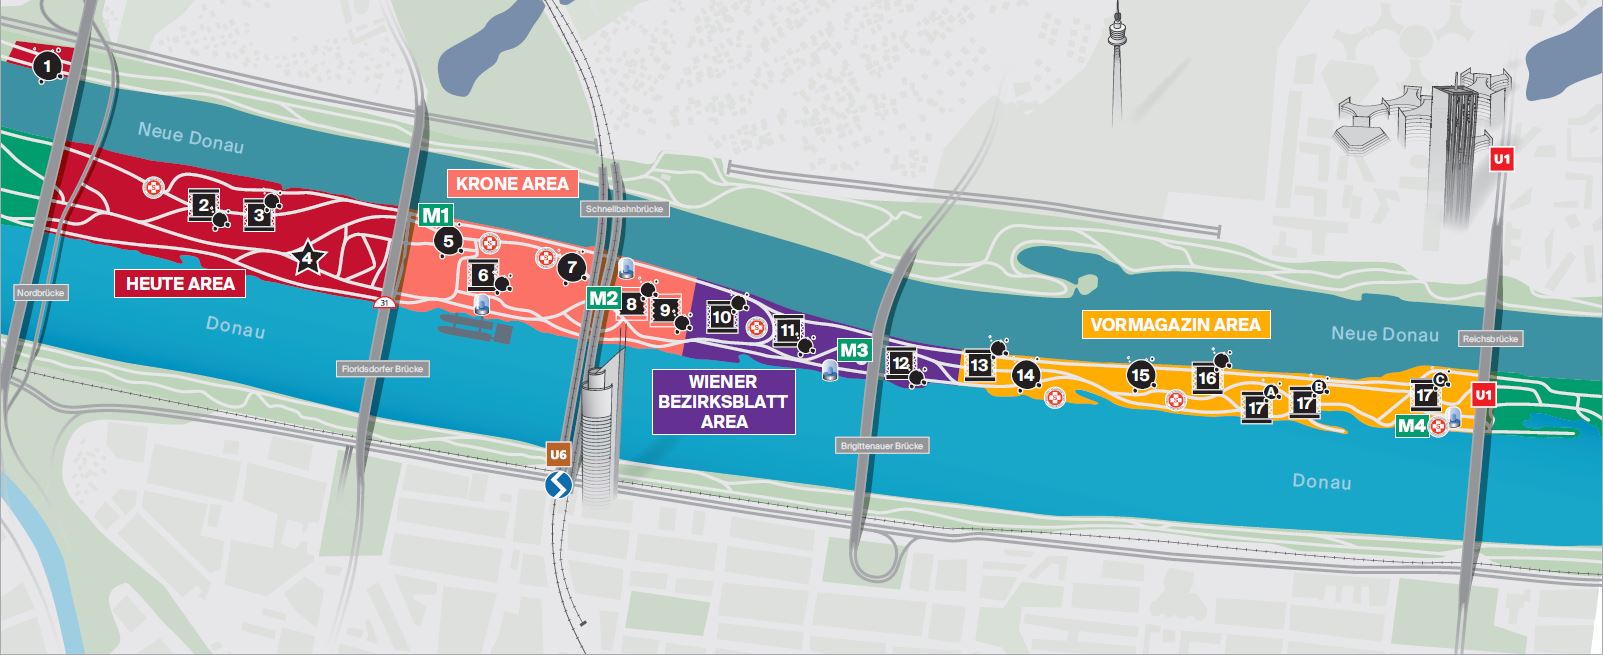 Plan zum Donauinselfest mit allen Bühnen und Standorten